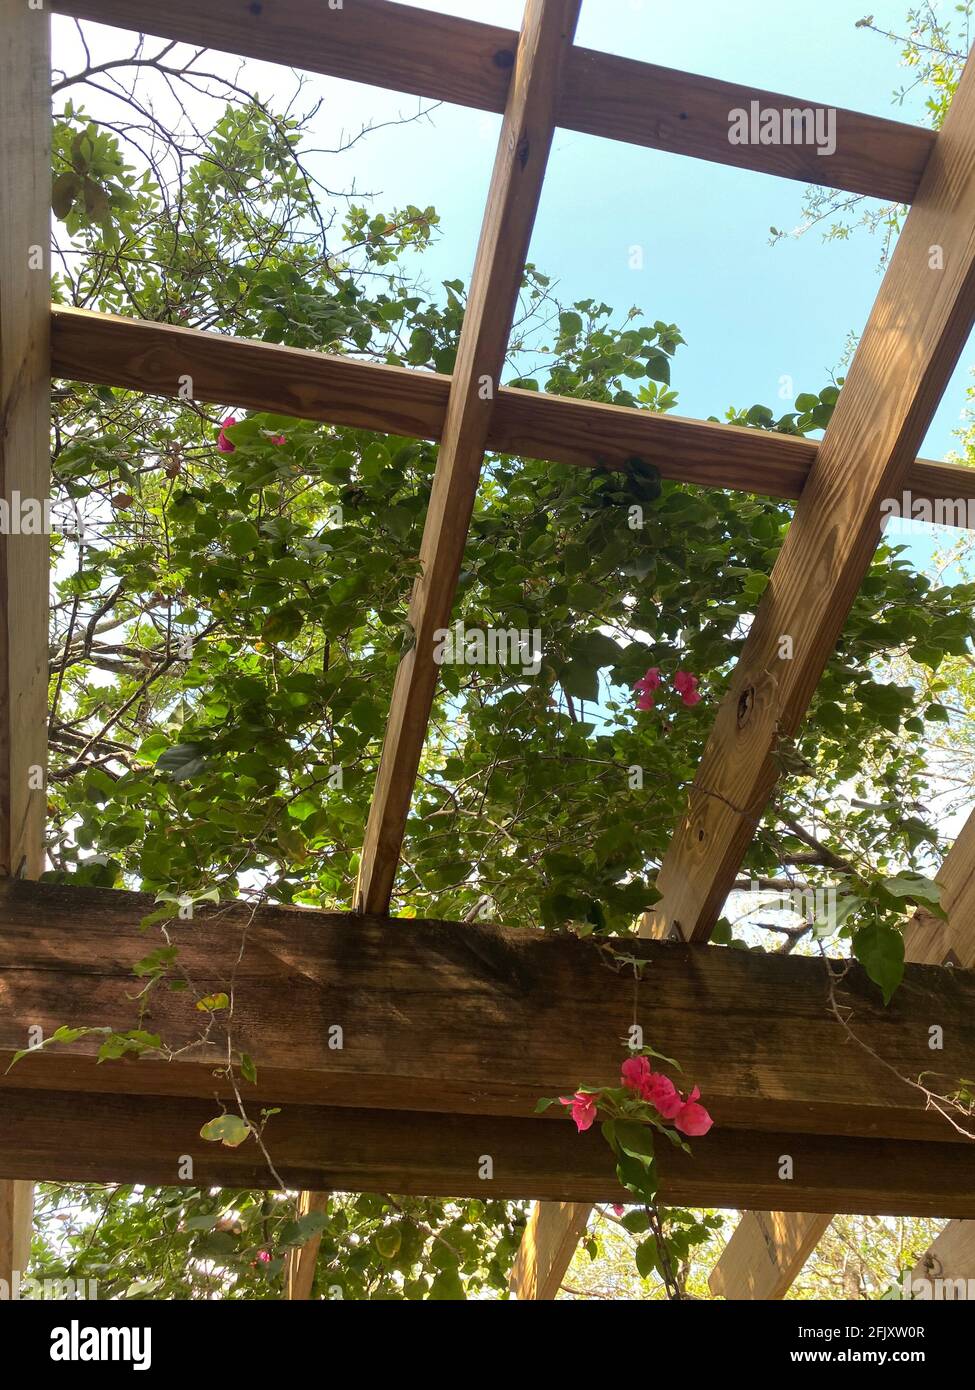 Terrasse im Freien Frühlingsgarten im Hinterhof des Hauses mit Blumen Und Reben wachsen aus Pergola Baldachin hölzernen Pavillon Stockfoto